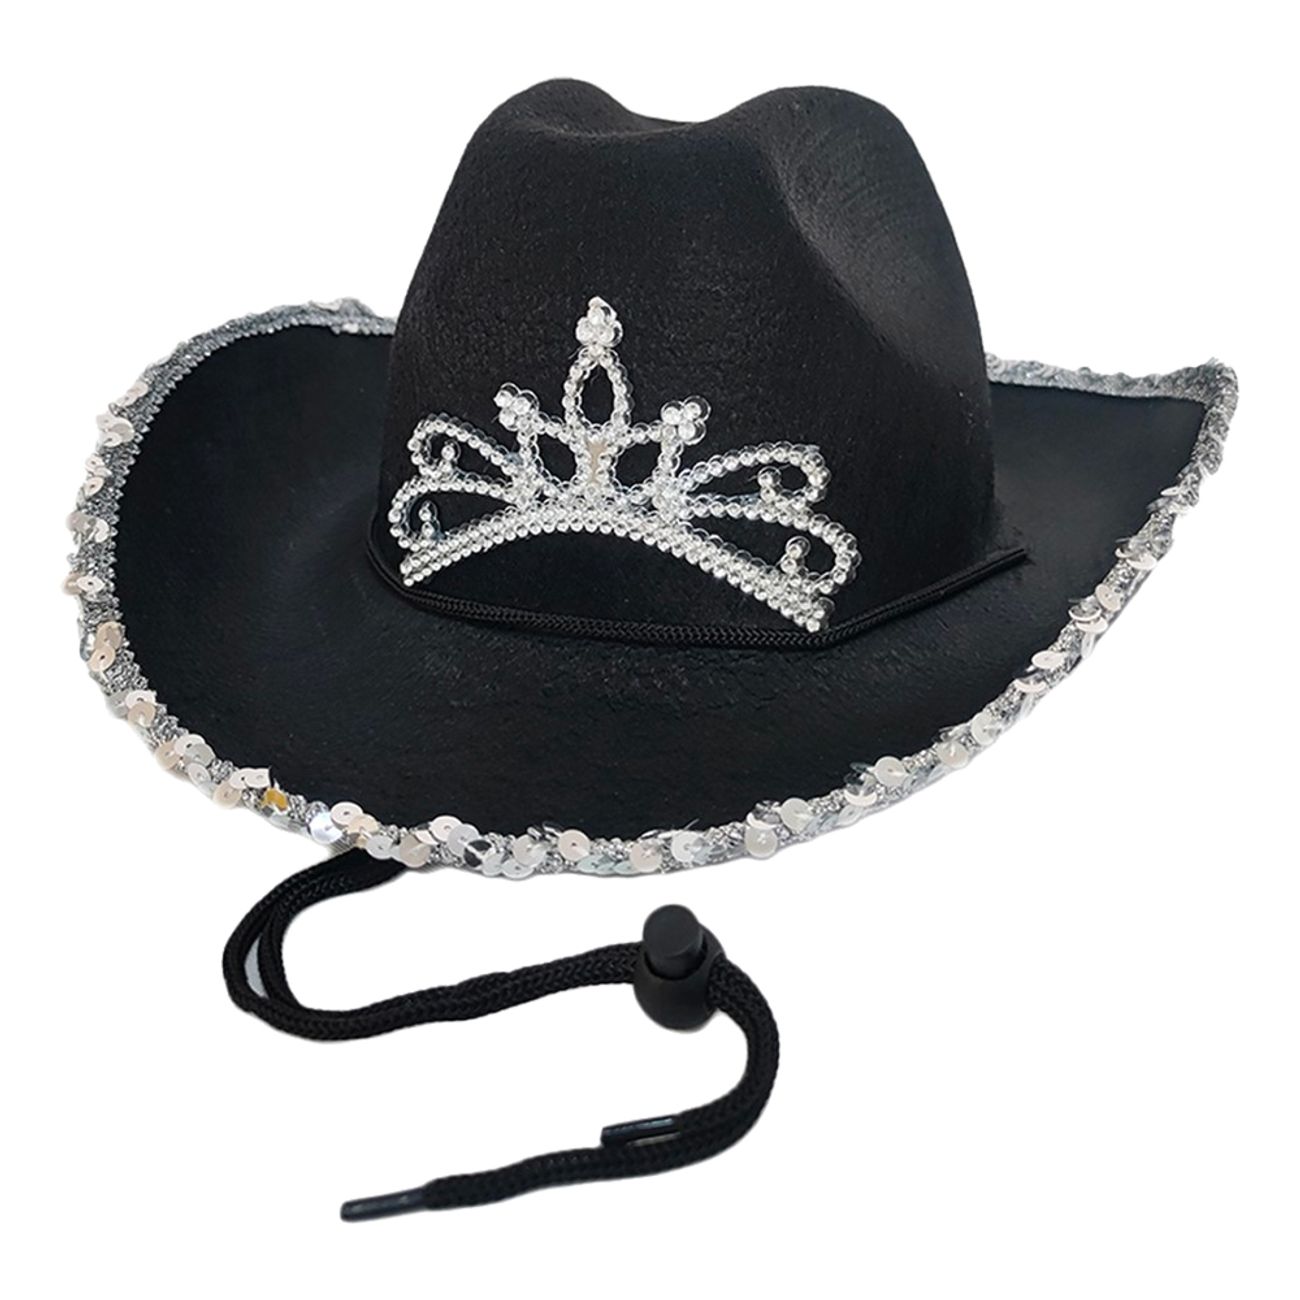 svart-cowboyhatt-med-tiara-88981-1